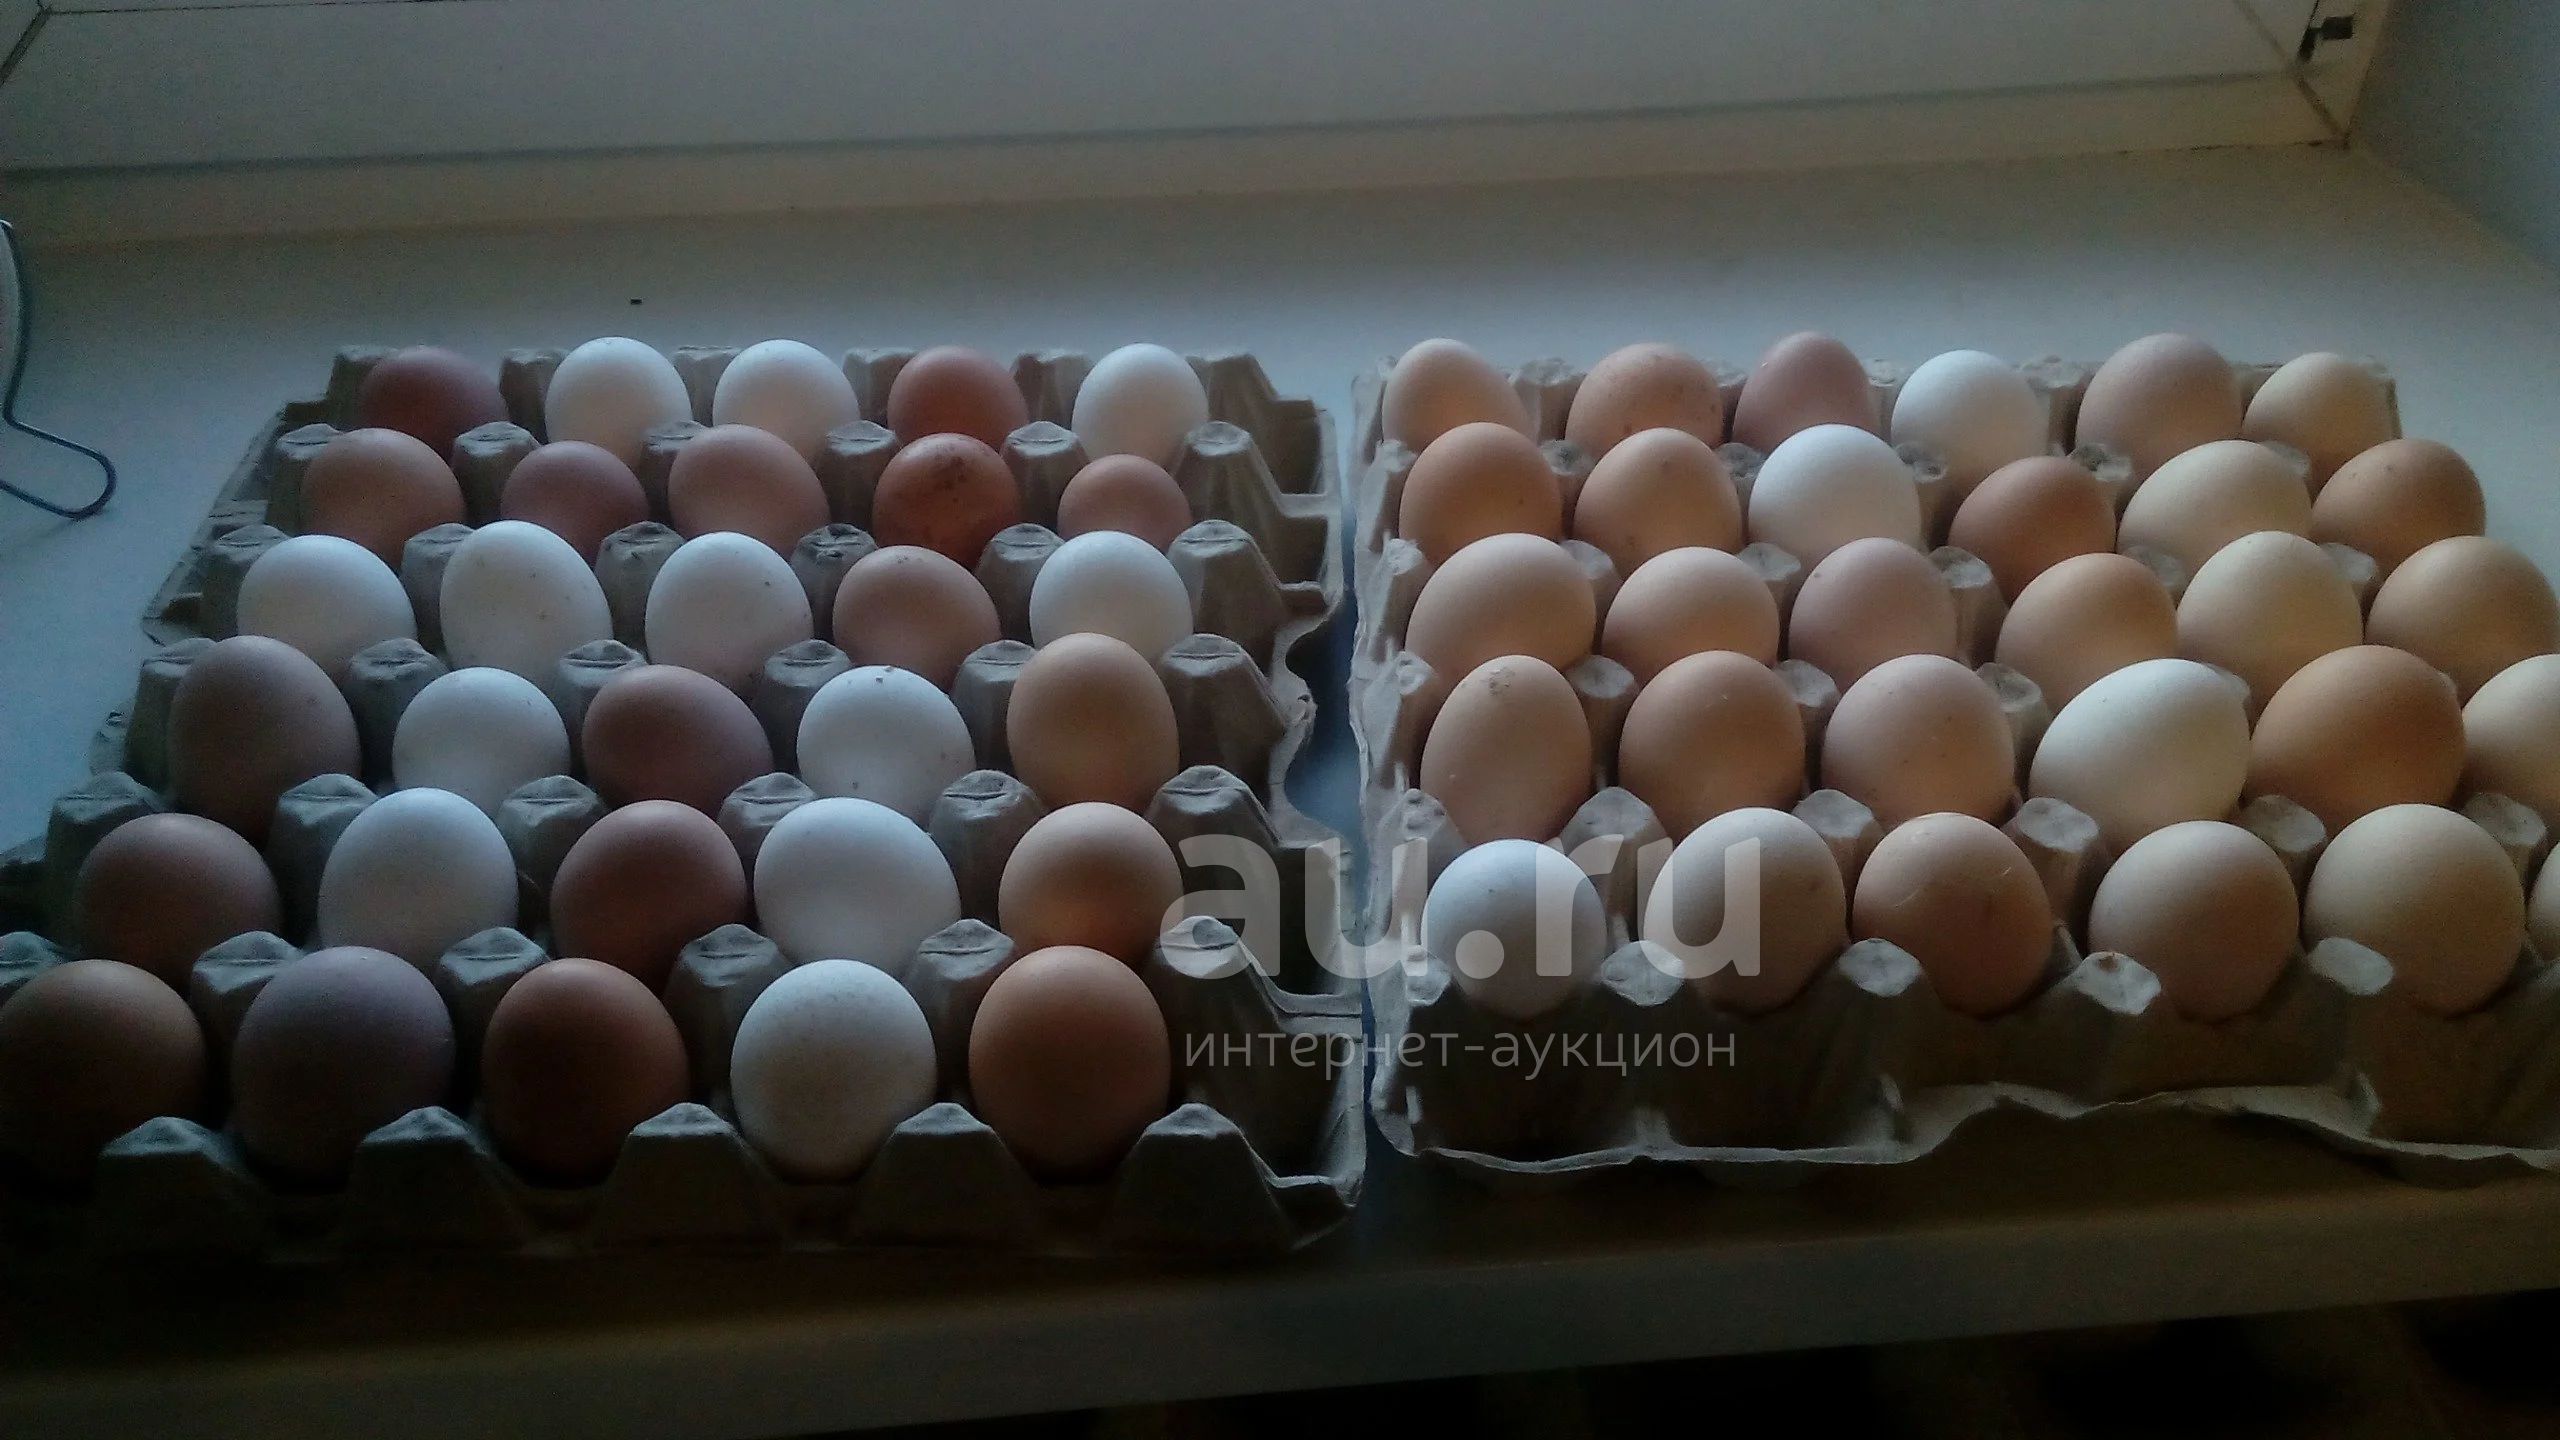 Купить яйца кур на авито. Сколько стоят домашние яйца. Продаются домашние яйца объявление. Домашнее,яйцо,г,Орел. Купить домашние яйца на авито.